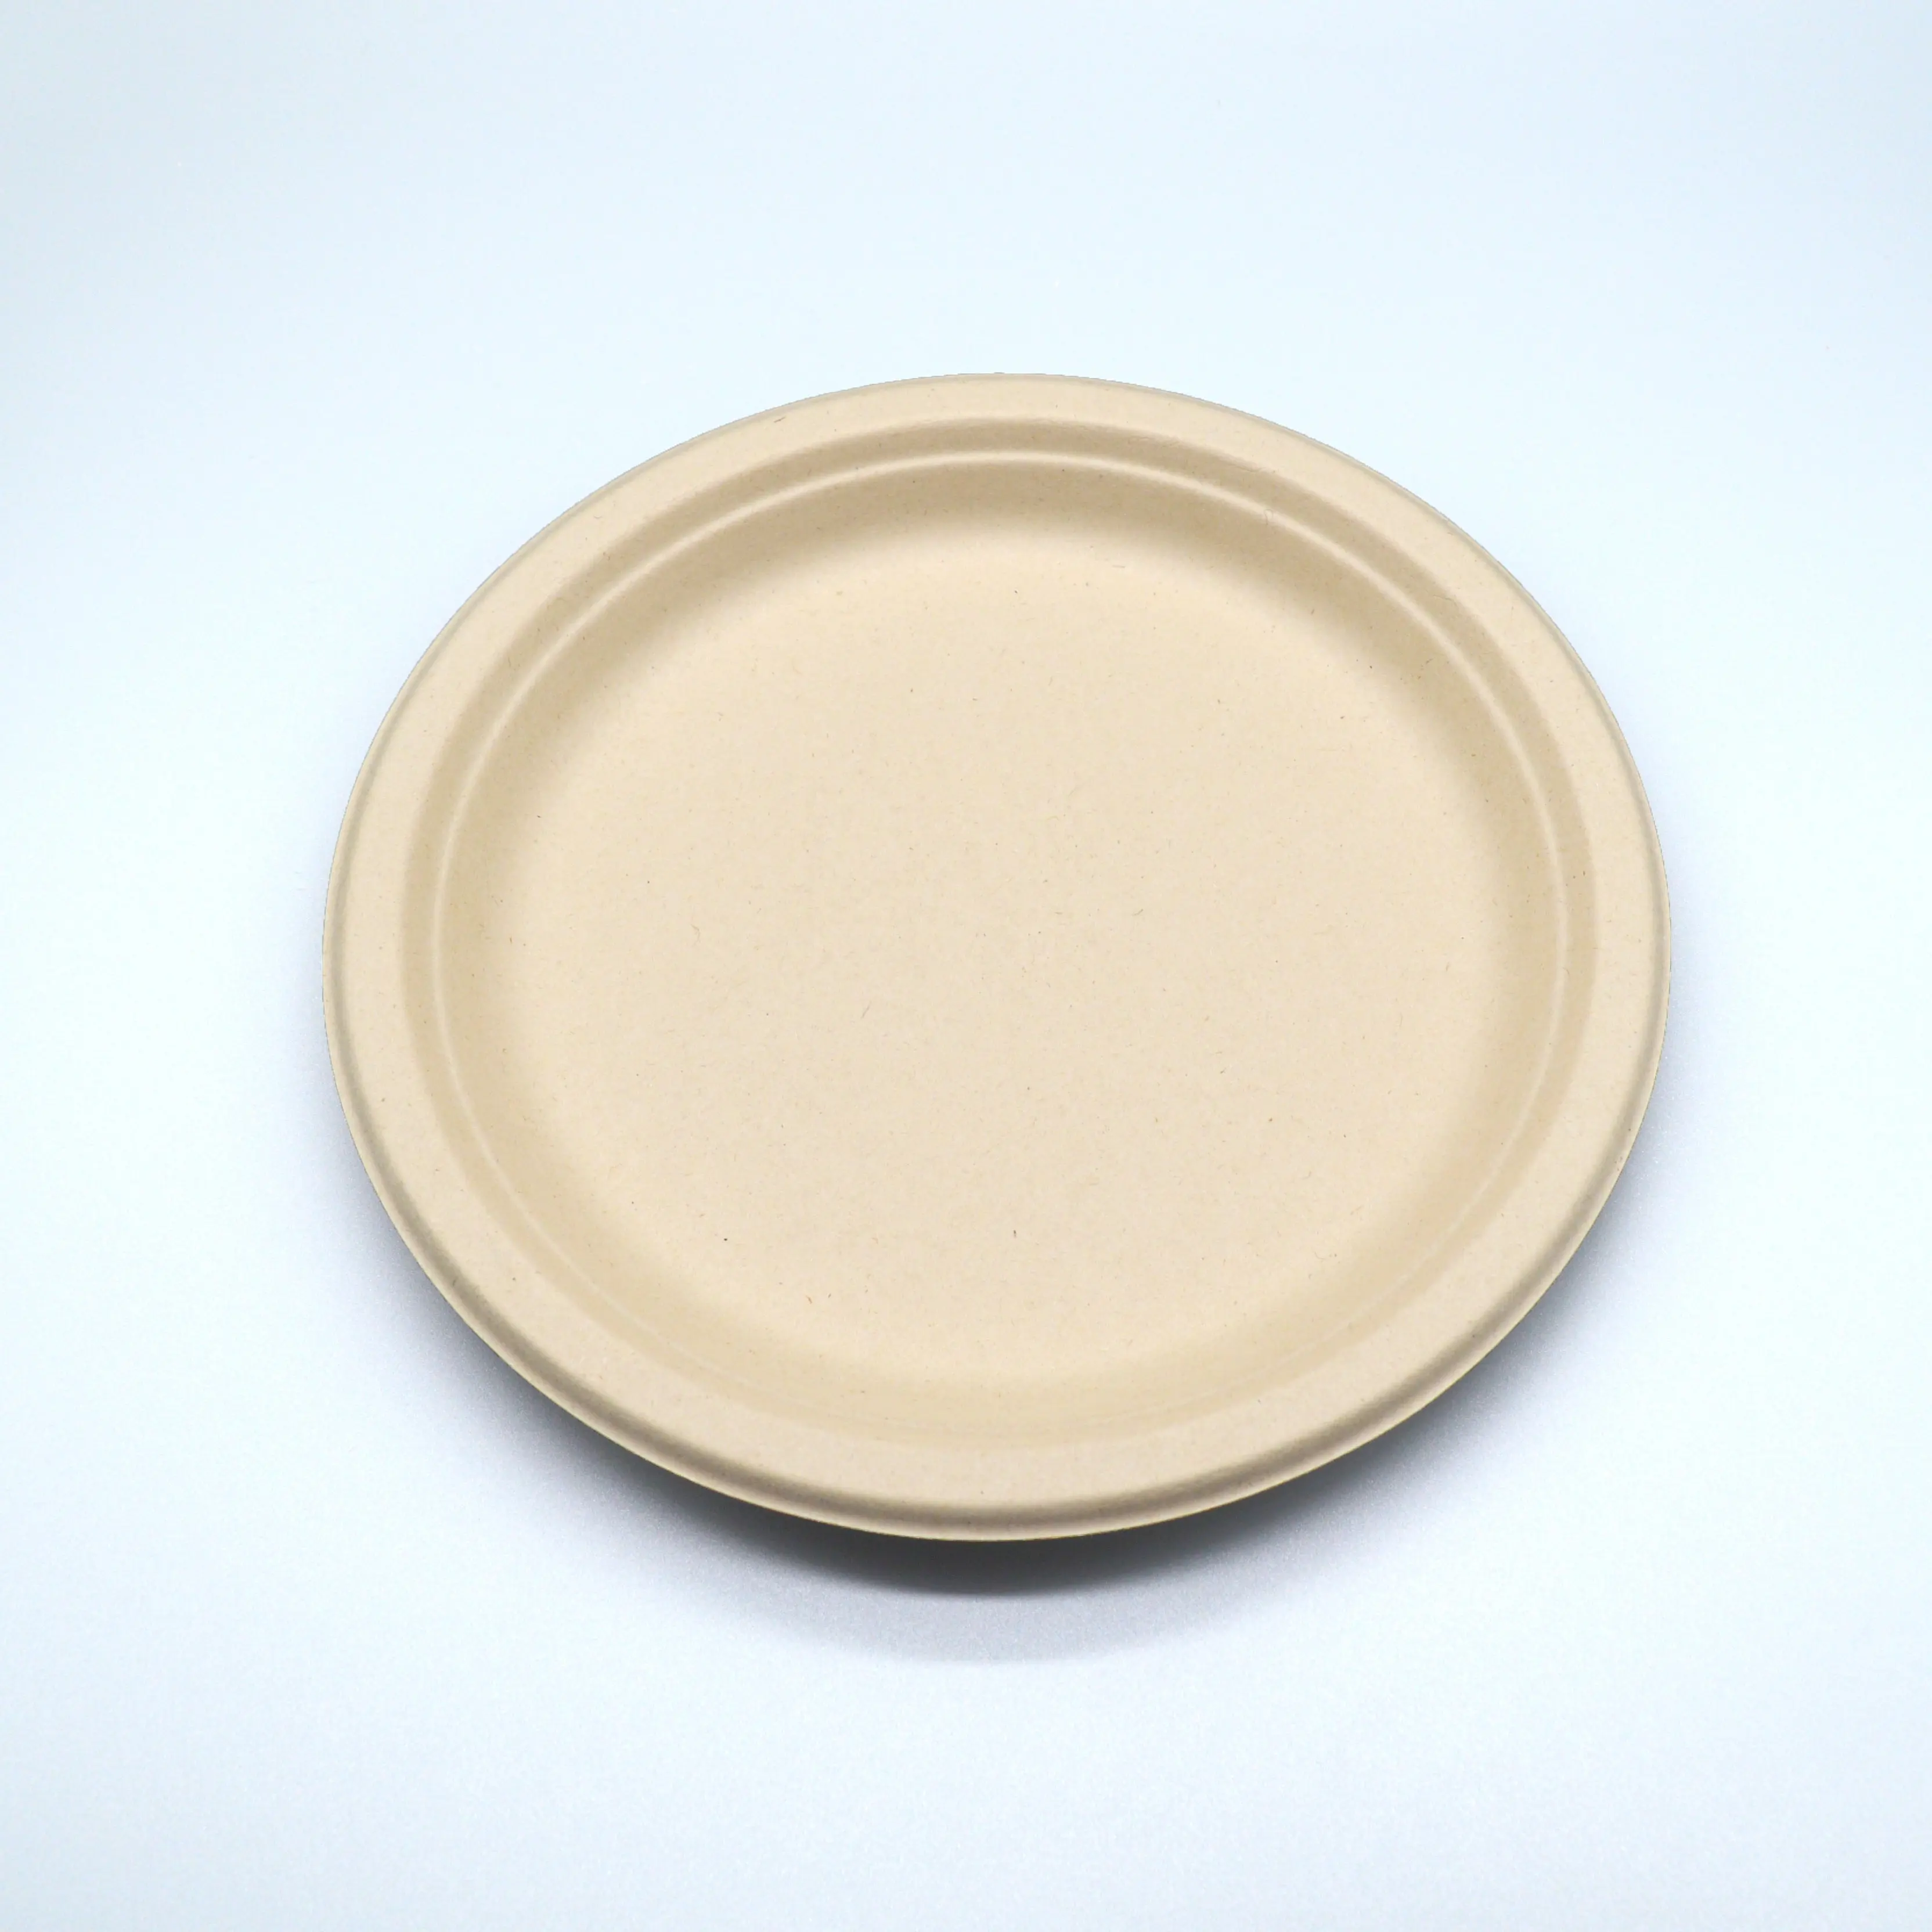 Ustomizable-productos compostables de 7 y 9 pulgadas, pulpa reciclada, papel desechable marrón